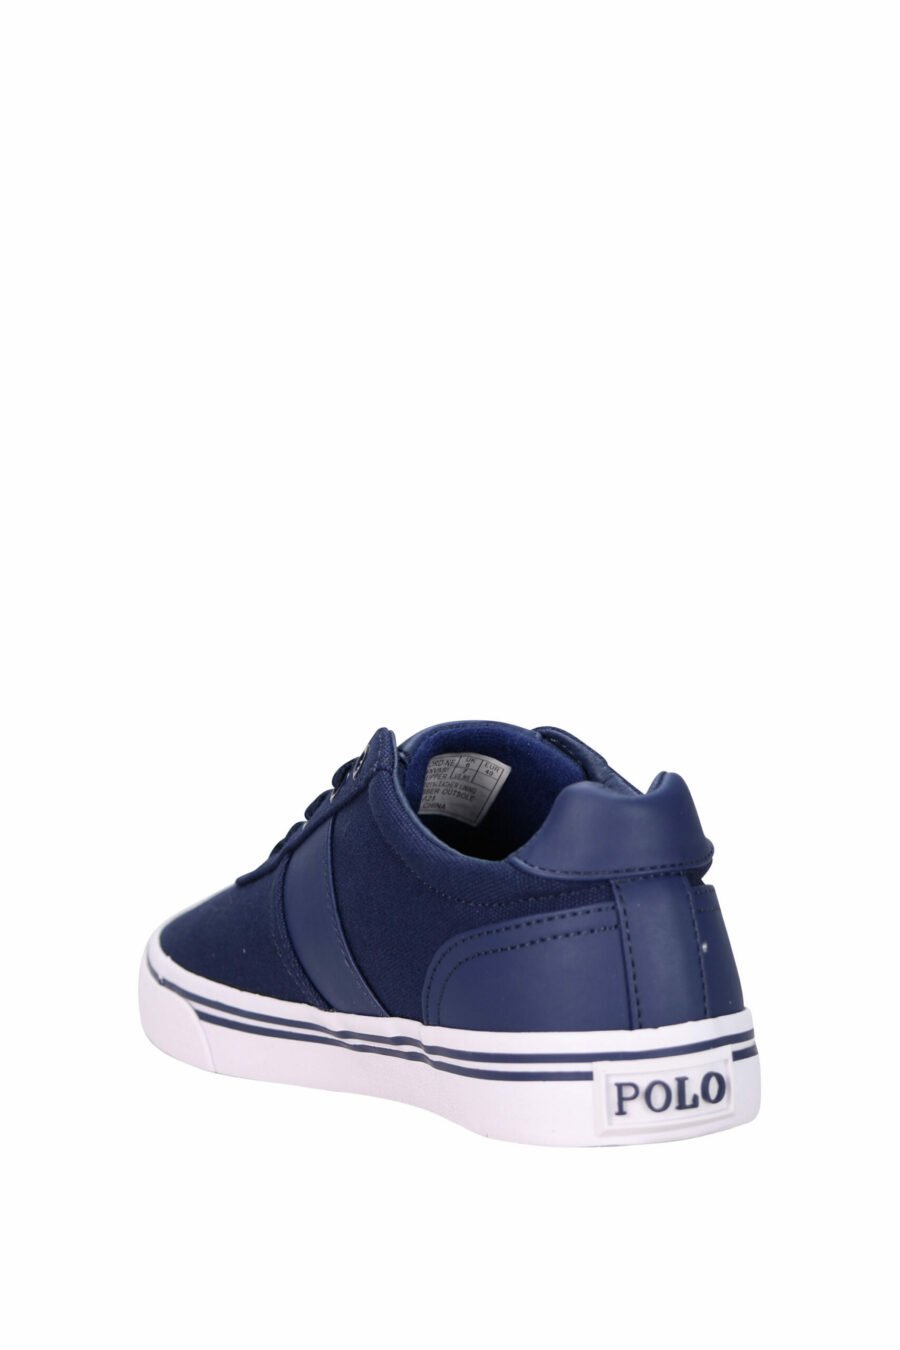 Baskets bleu foncé avec mini-logo "polo" et semelle blanche - 3611588439341 3 échelles